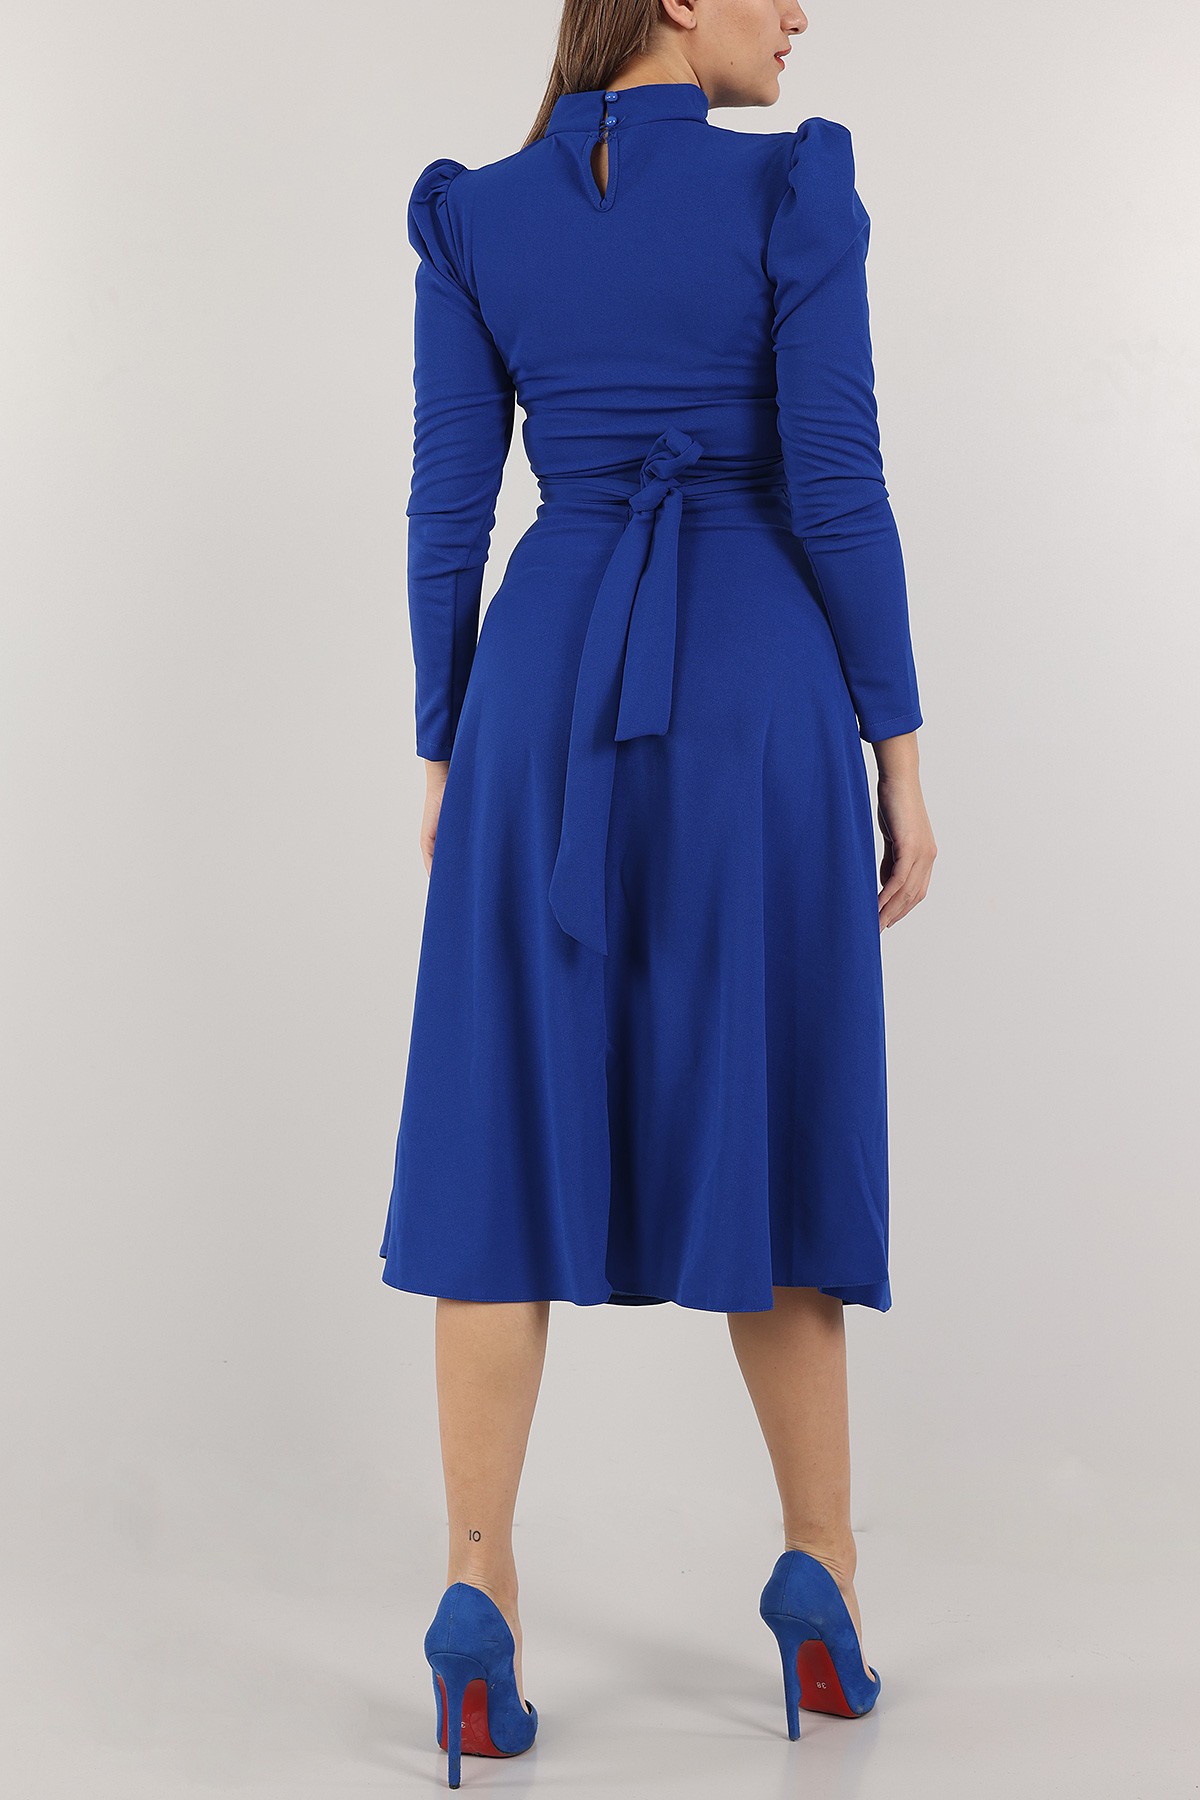 Saks Mavisi Beli Bağlamalı Elbise 154126